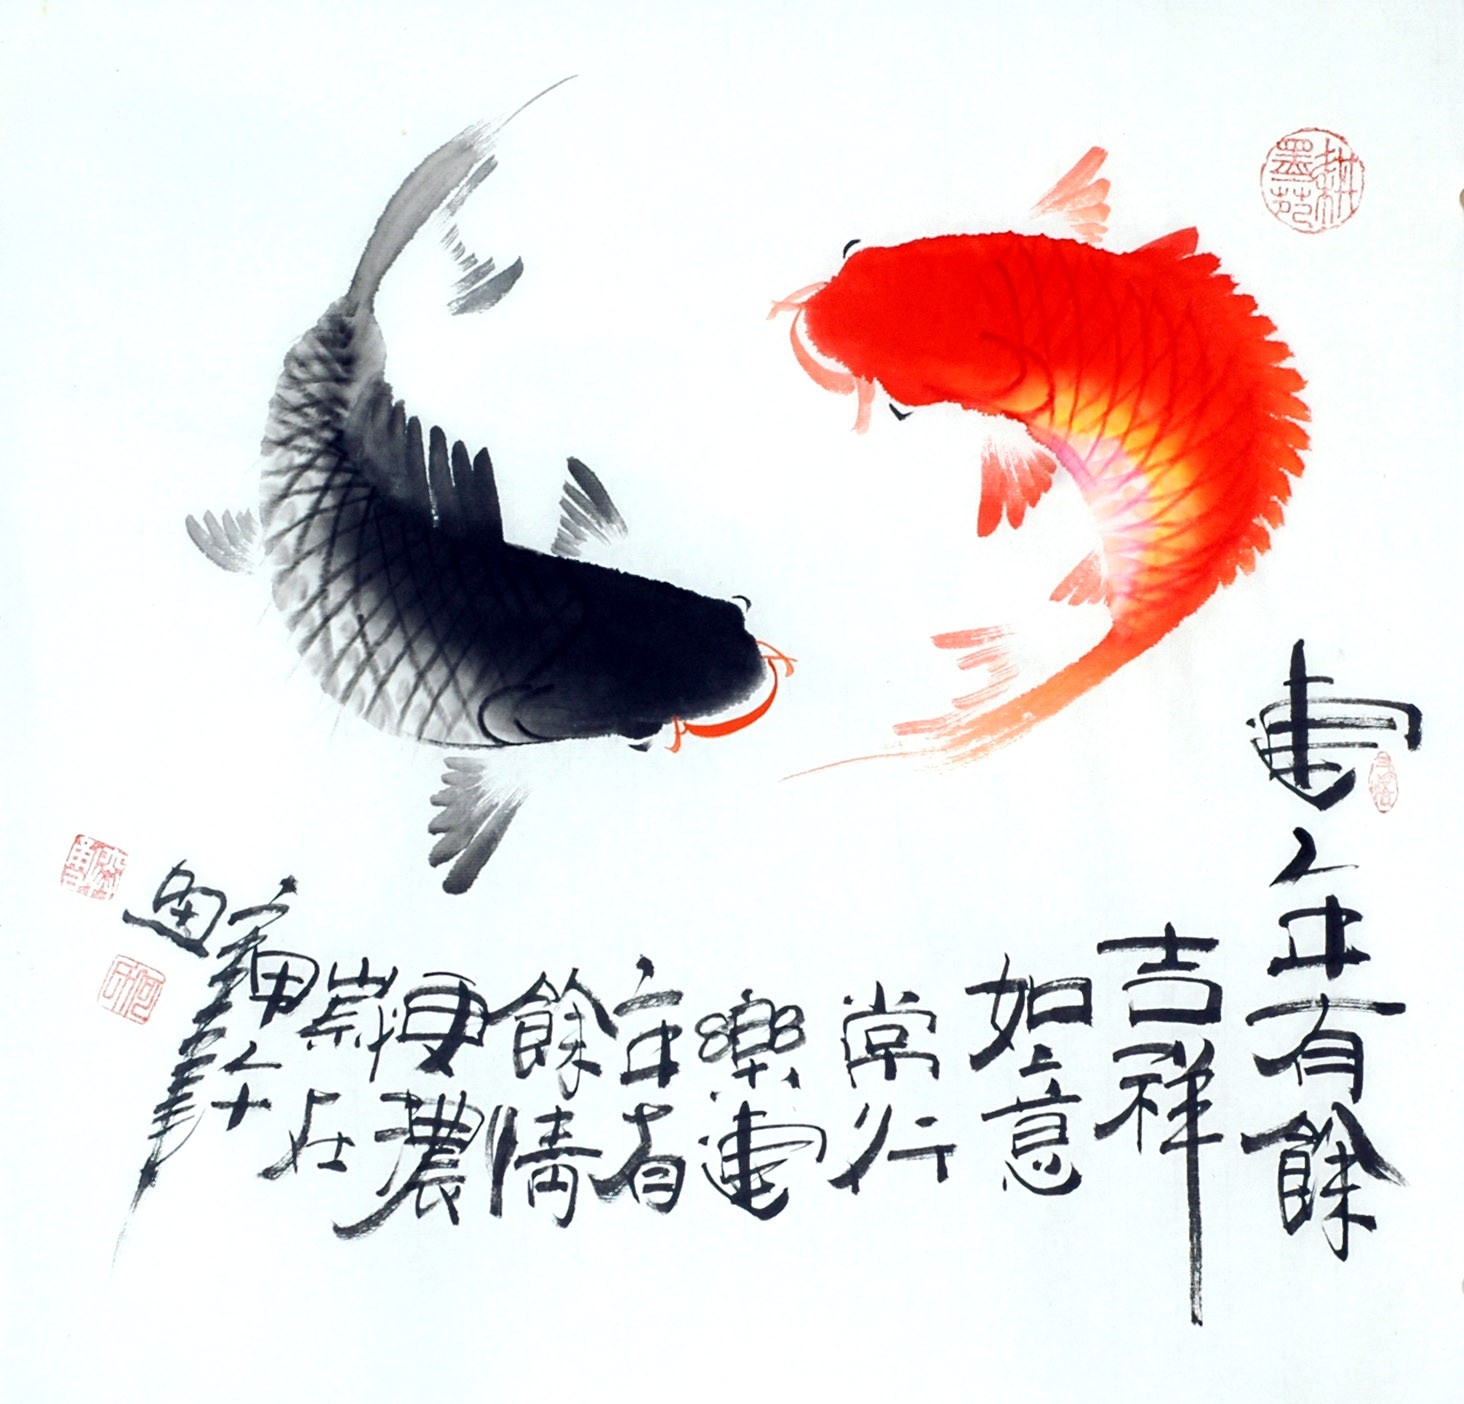 Chinese Fish Painting - CNAG012406